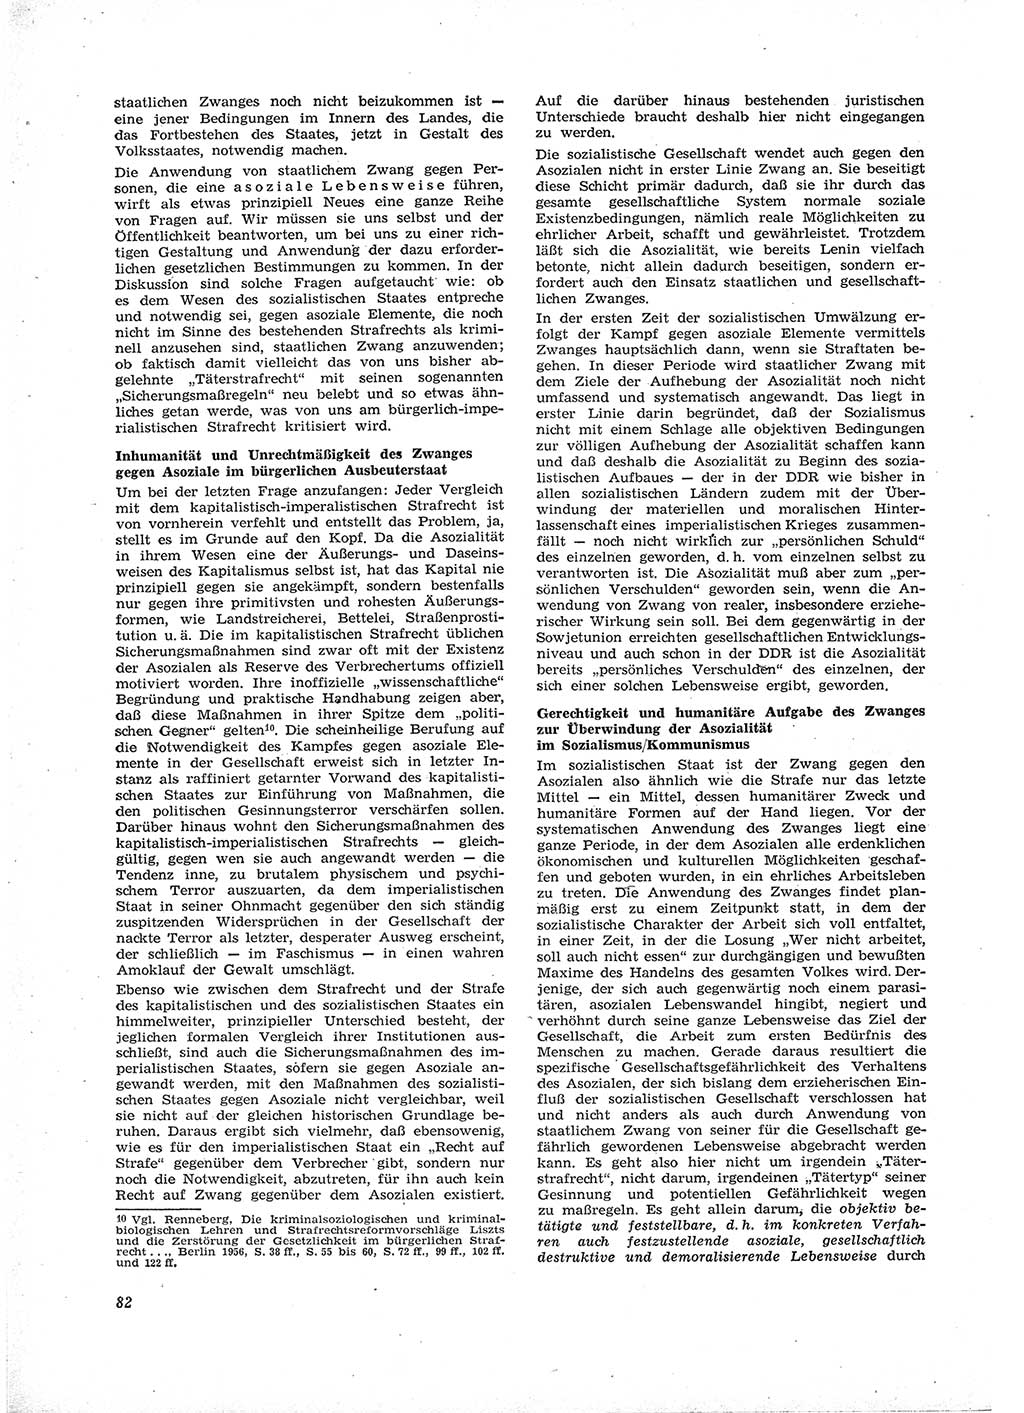 Neue Justiz (NJ), Zeitschrift für Recht und Rechtswissenschaft [Deutsche Demokratische Republik (DDR)], 16. Jahrgang 1962, Seite 82 (NJ DDR 1962, S. 82)